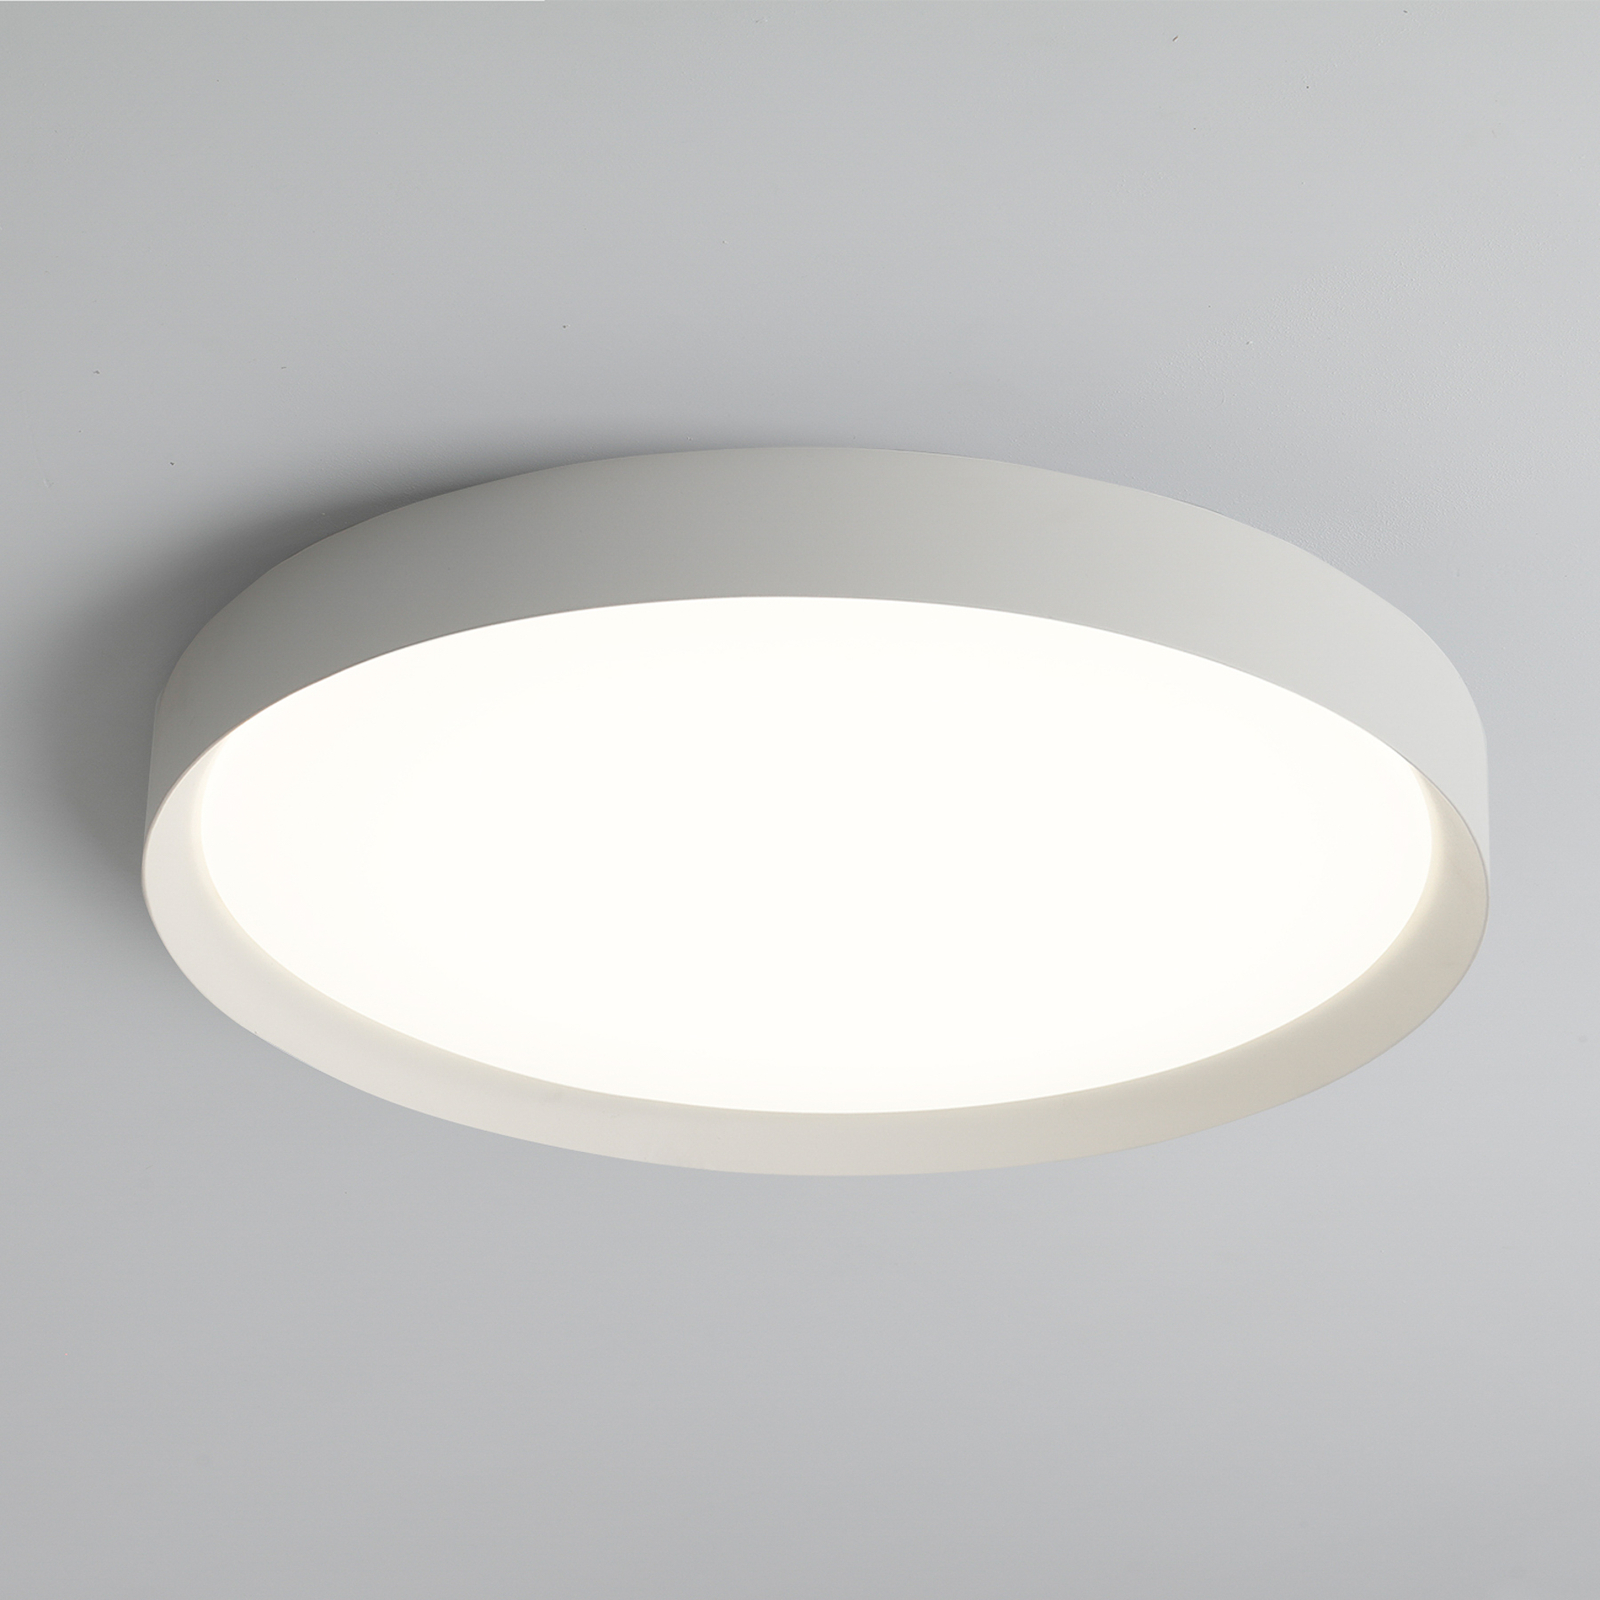 LED lubinis šviestuvas Minskas, Ø 60 cm, Casambi, 42 W, baltas